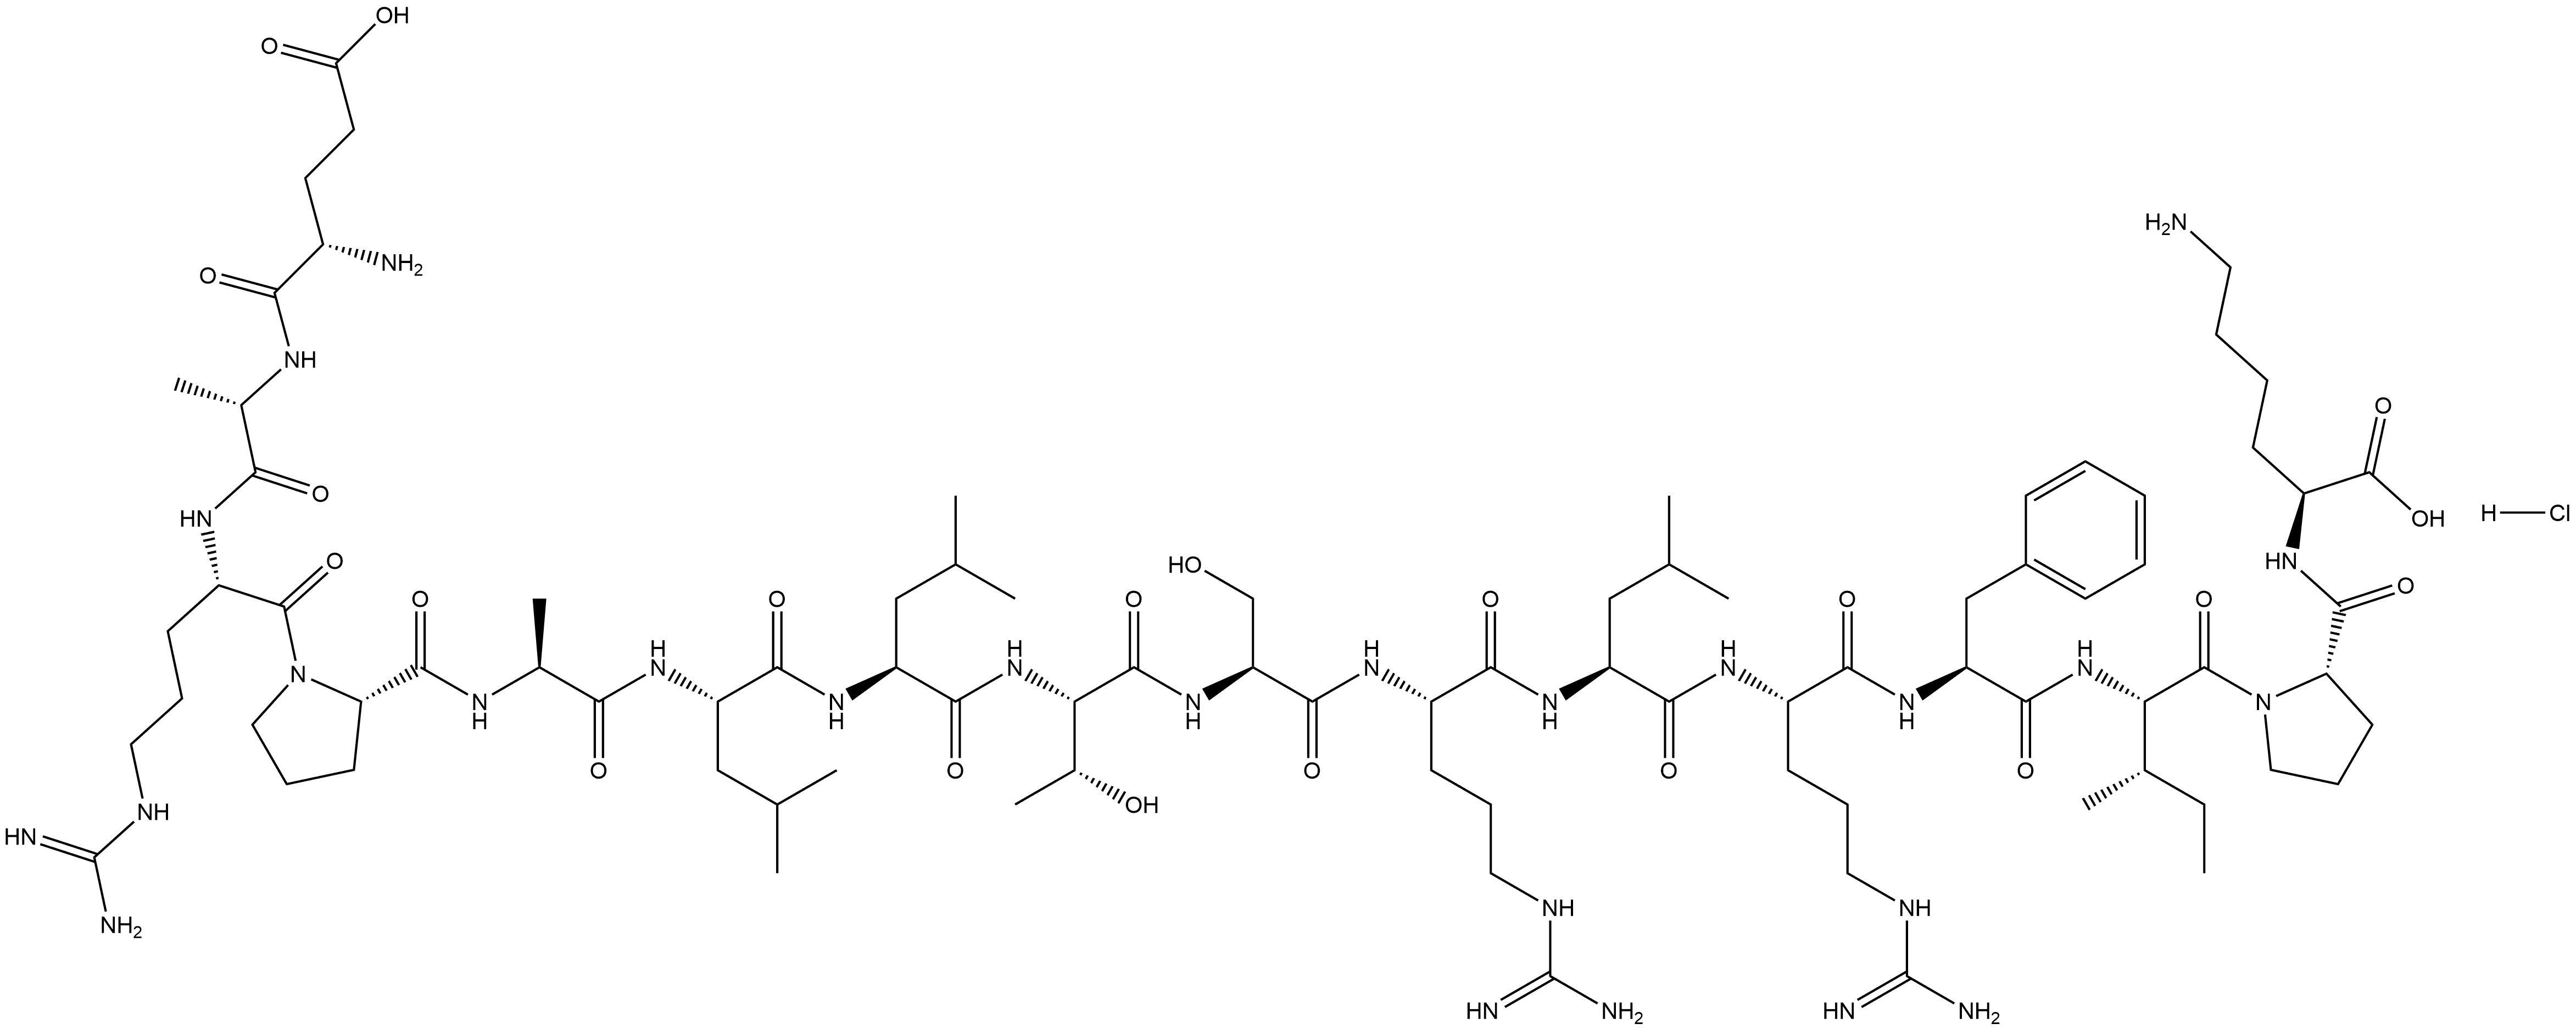 922174-60-5 人类端粒酶逆转录酶(TERT)序列多肽